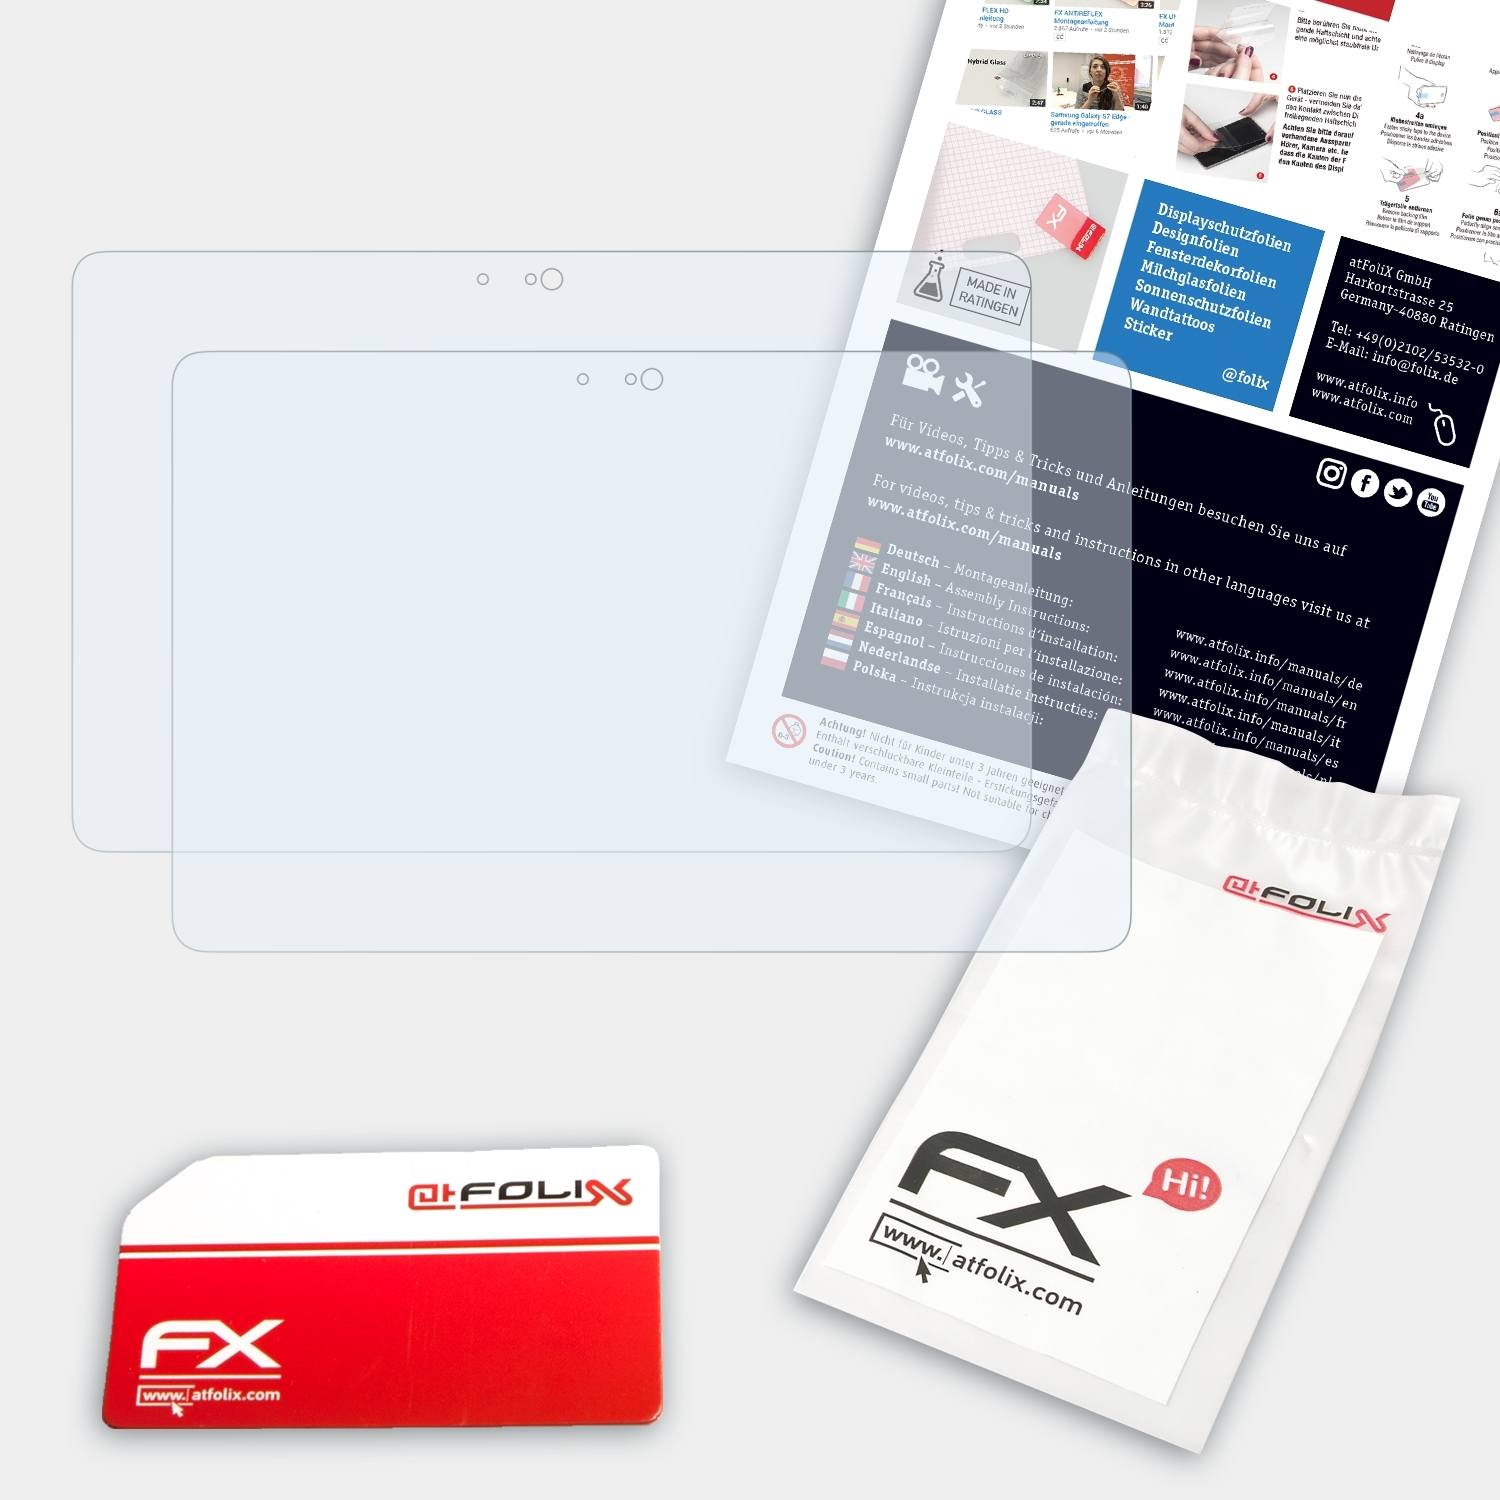 7000) Pro 5000 FX-Clear ATFOLIX Dell 2x / Venue 11 Displayschutz(für